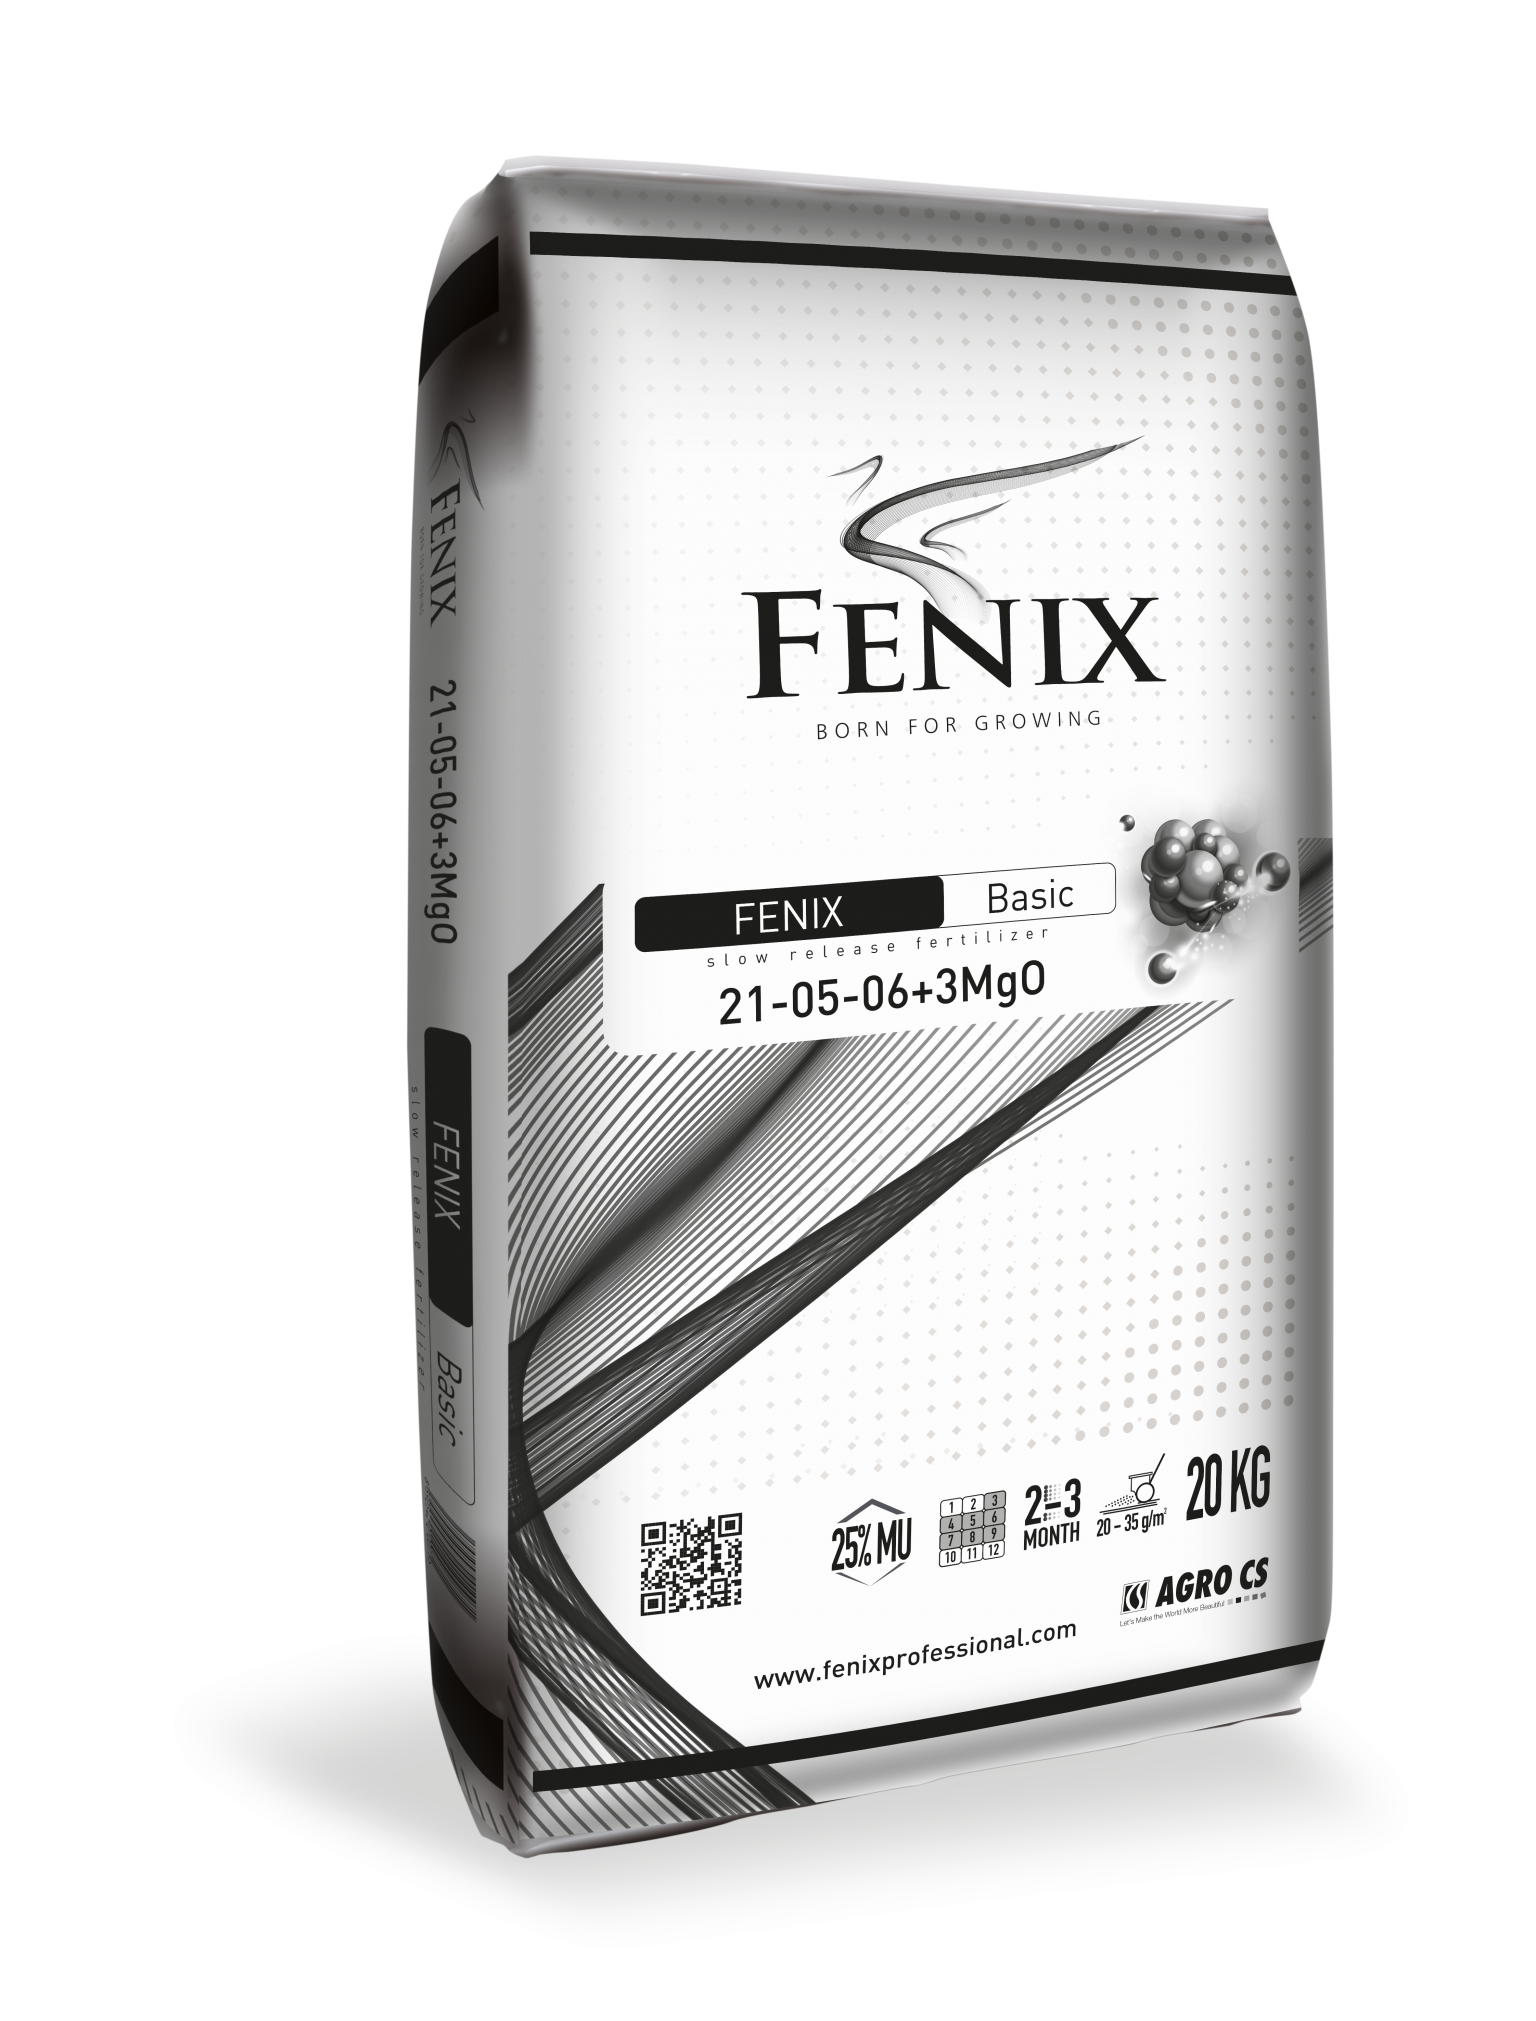 FENIX Basic 21-05-06+3MgO (25 % MU) 20 kg